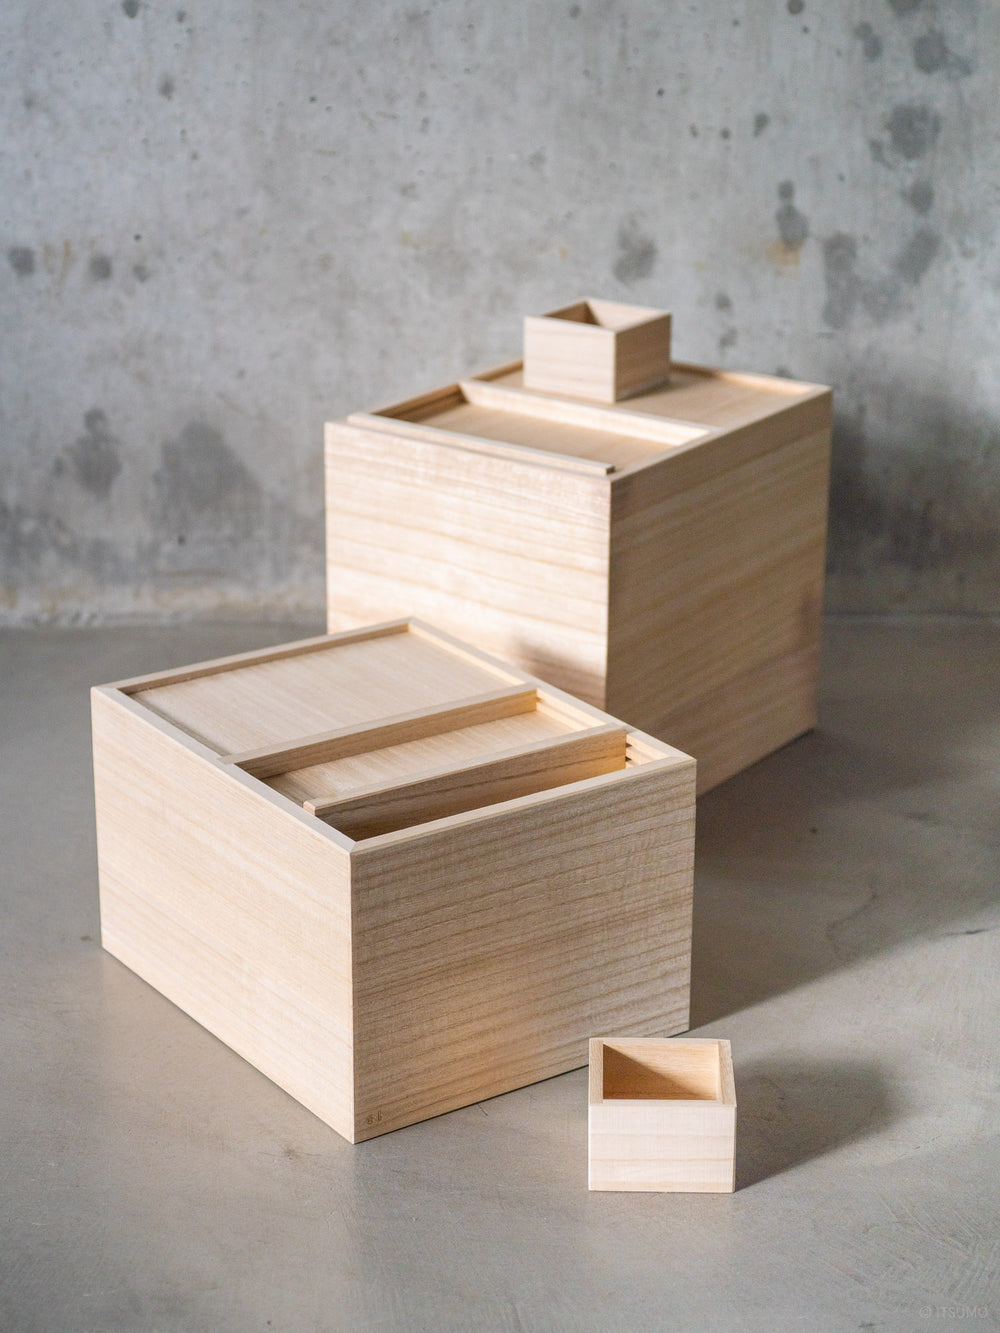 Japanese rice storage boxes made of Kiri wood